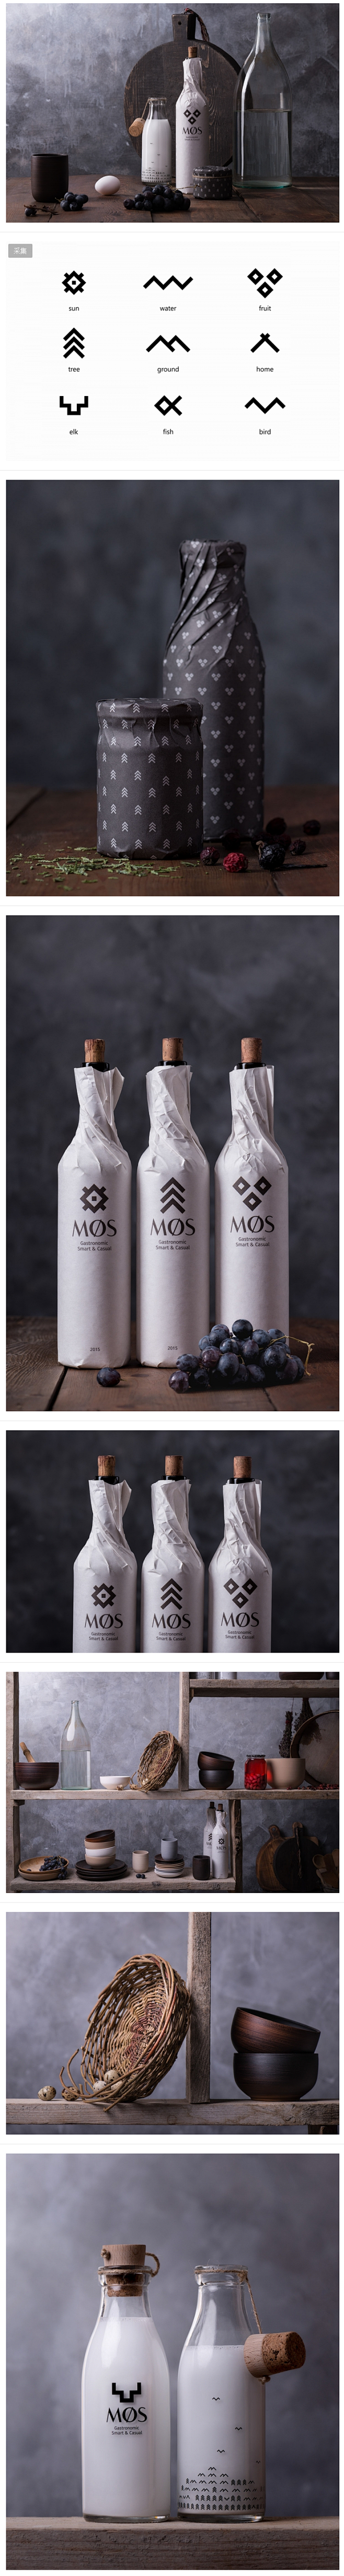 MØS莫斯科北欧餐馆品牌视觉设计 | B...